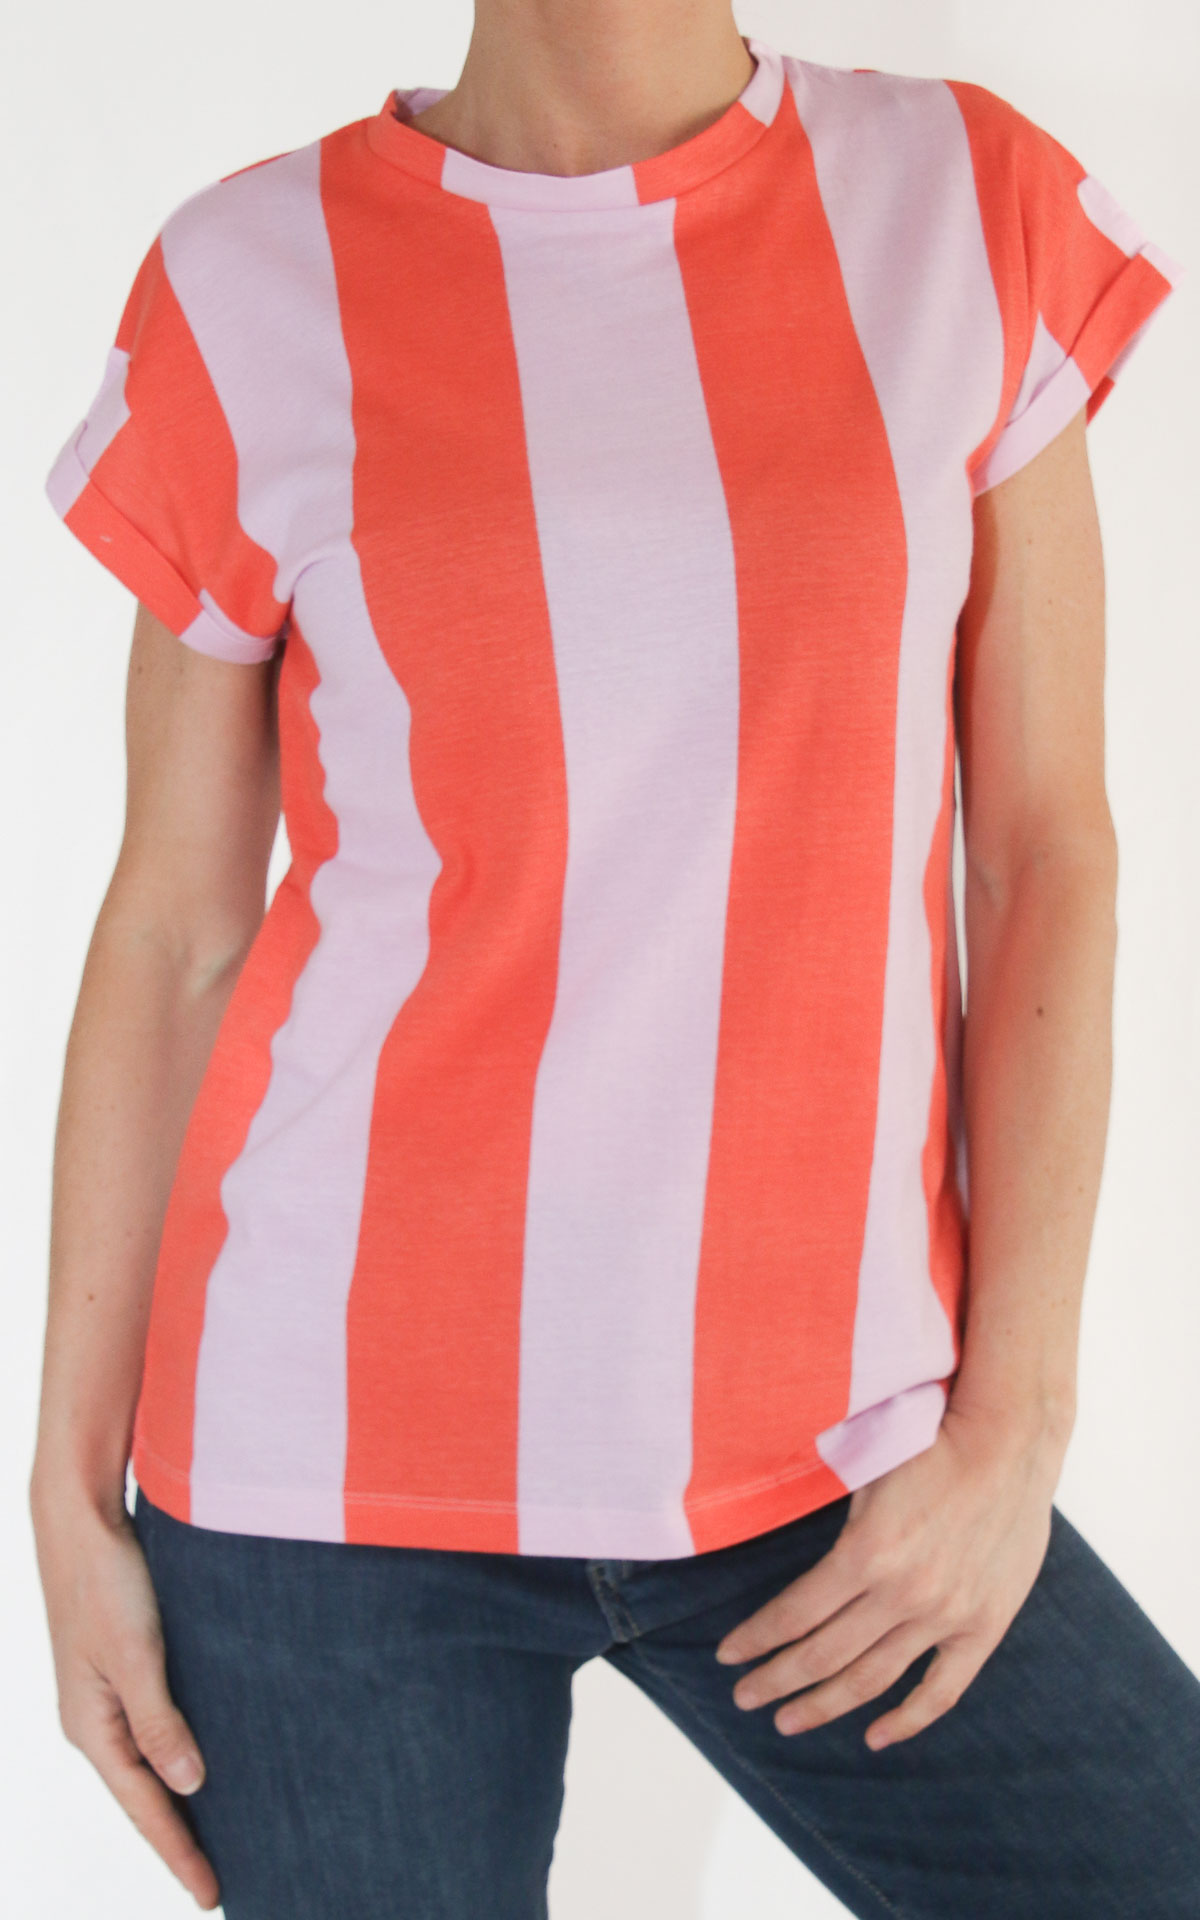 Compania fantastica - t-shirt riga verticale bicolore - Rosso/ rosa